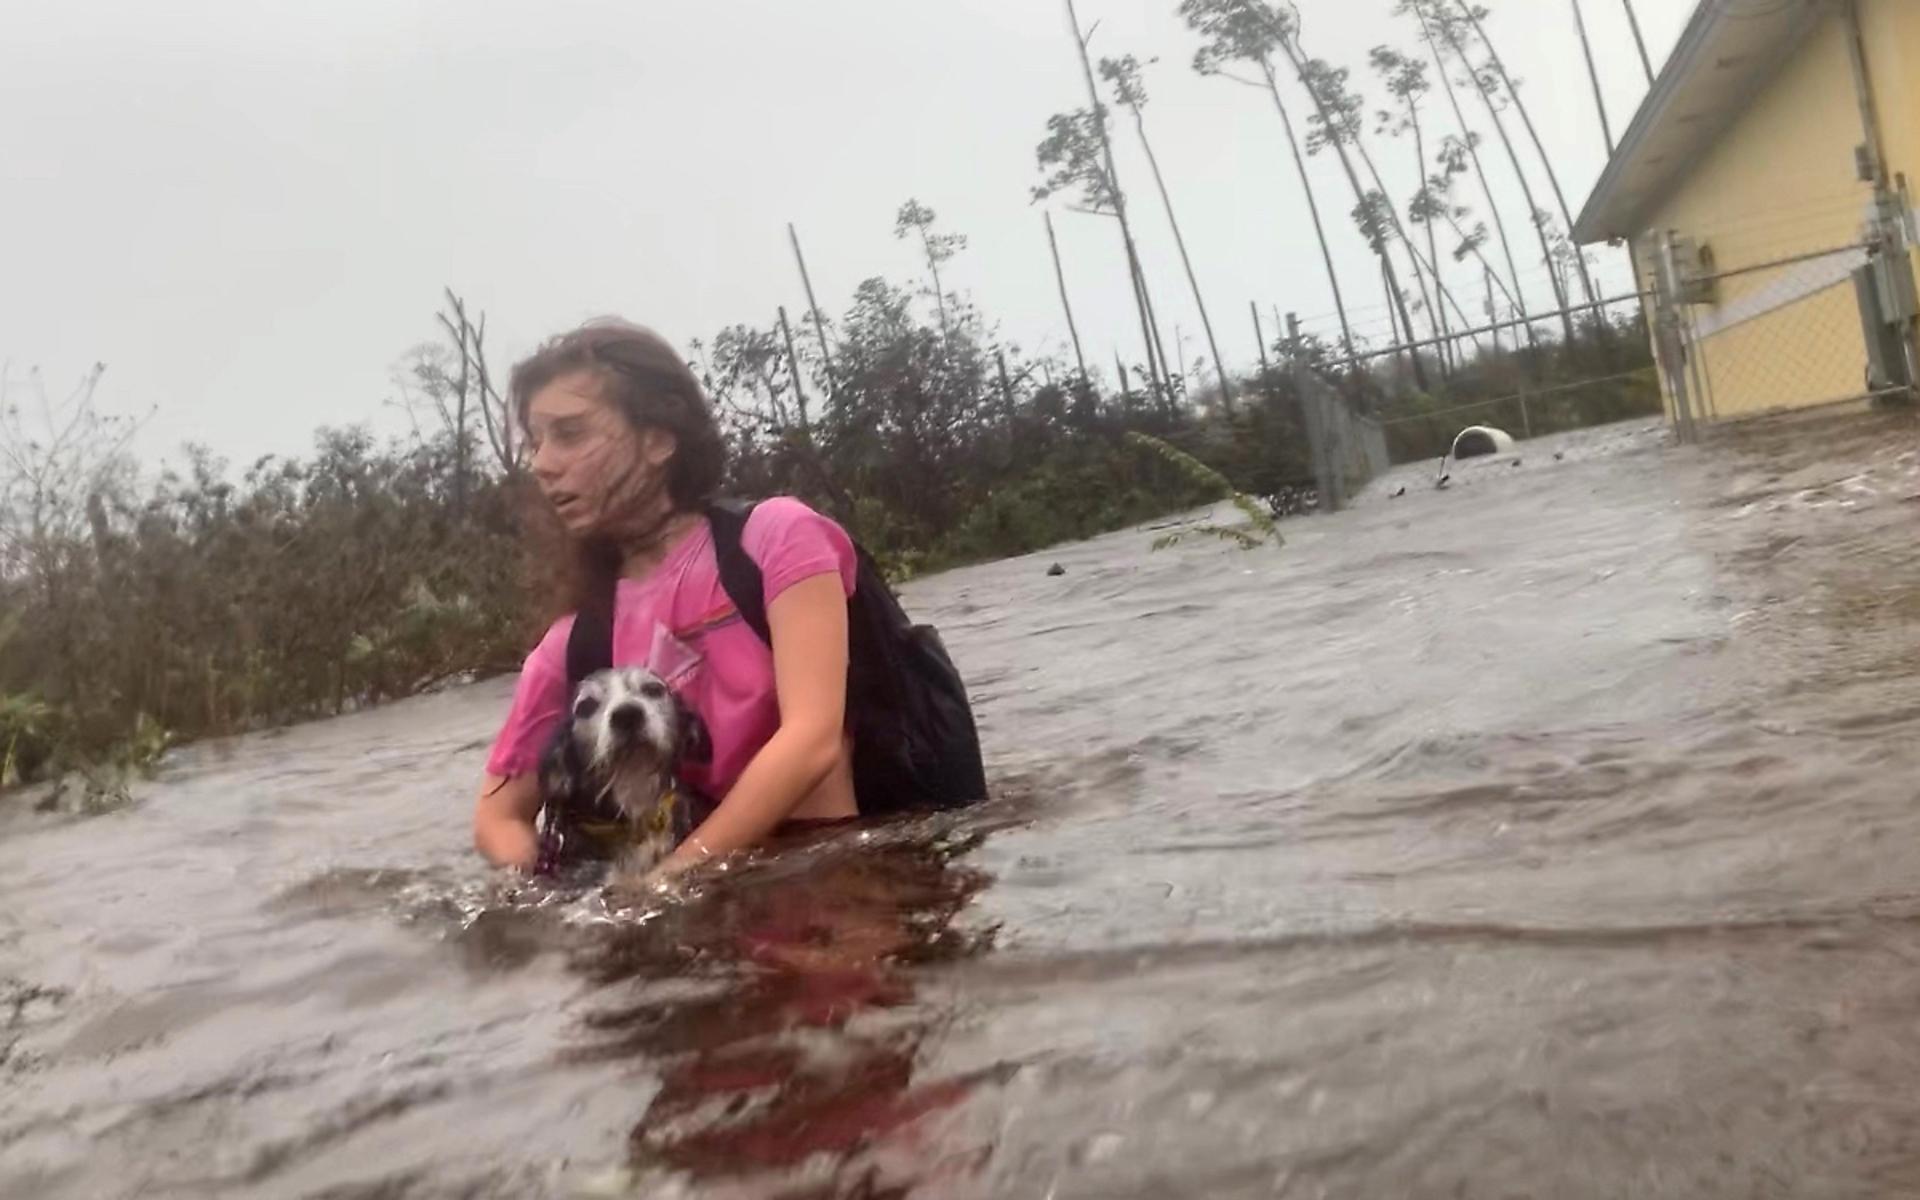 Julia Aylen vadar genom översvämningen med sin hund i famnen i Freeport, Bahamas. 